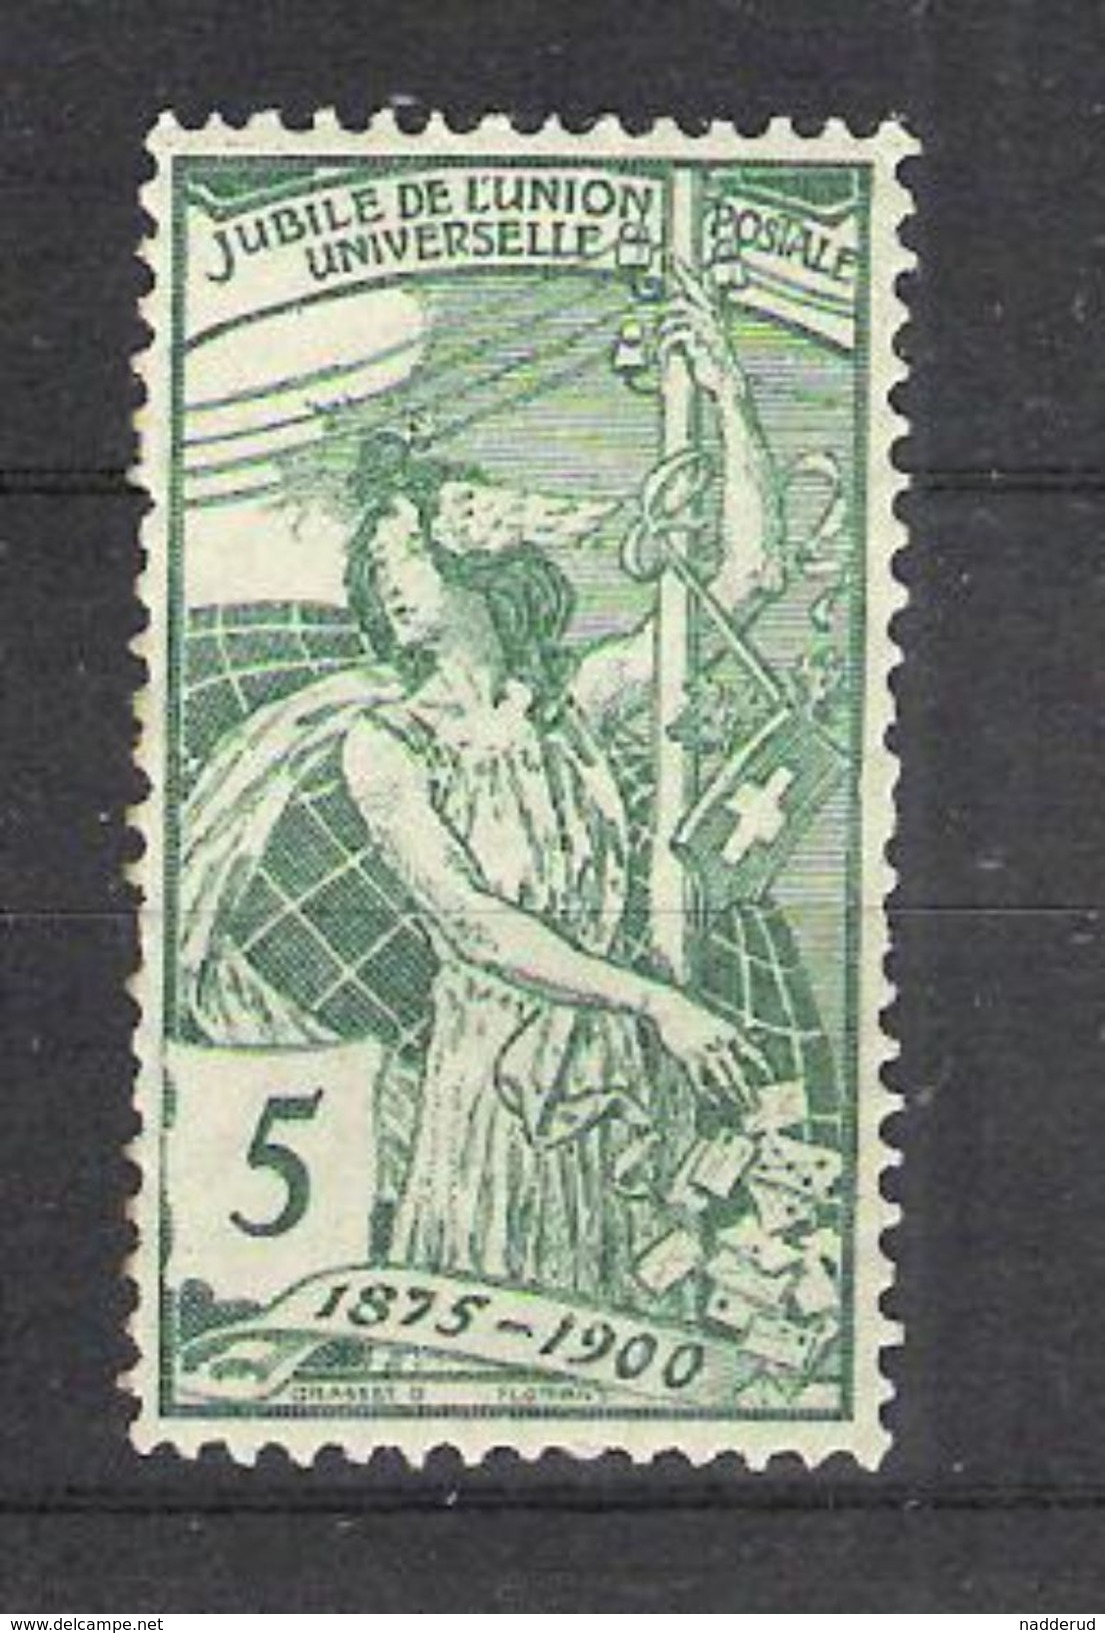 (0790) Switzerland UPU 1900 - Unused Stamps